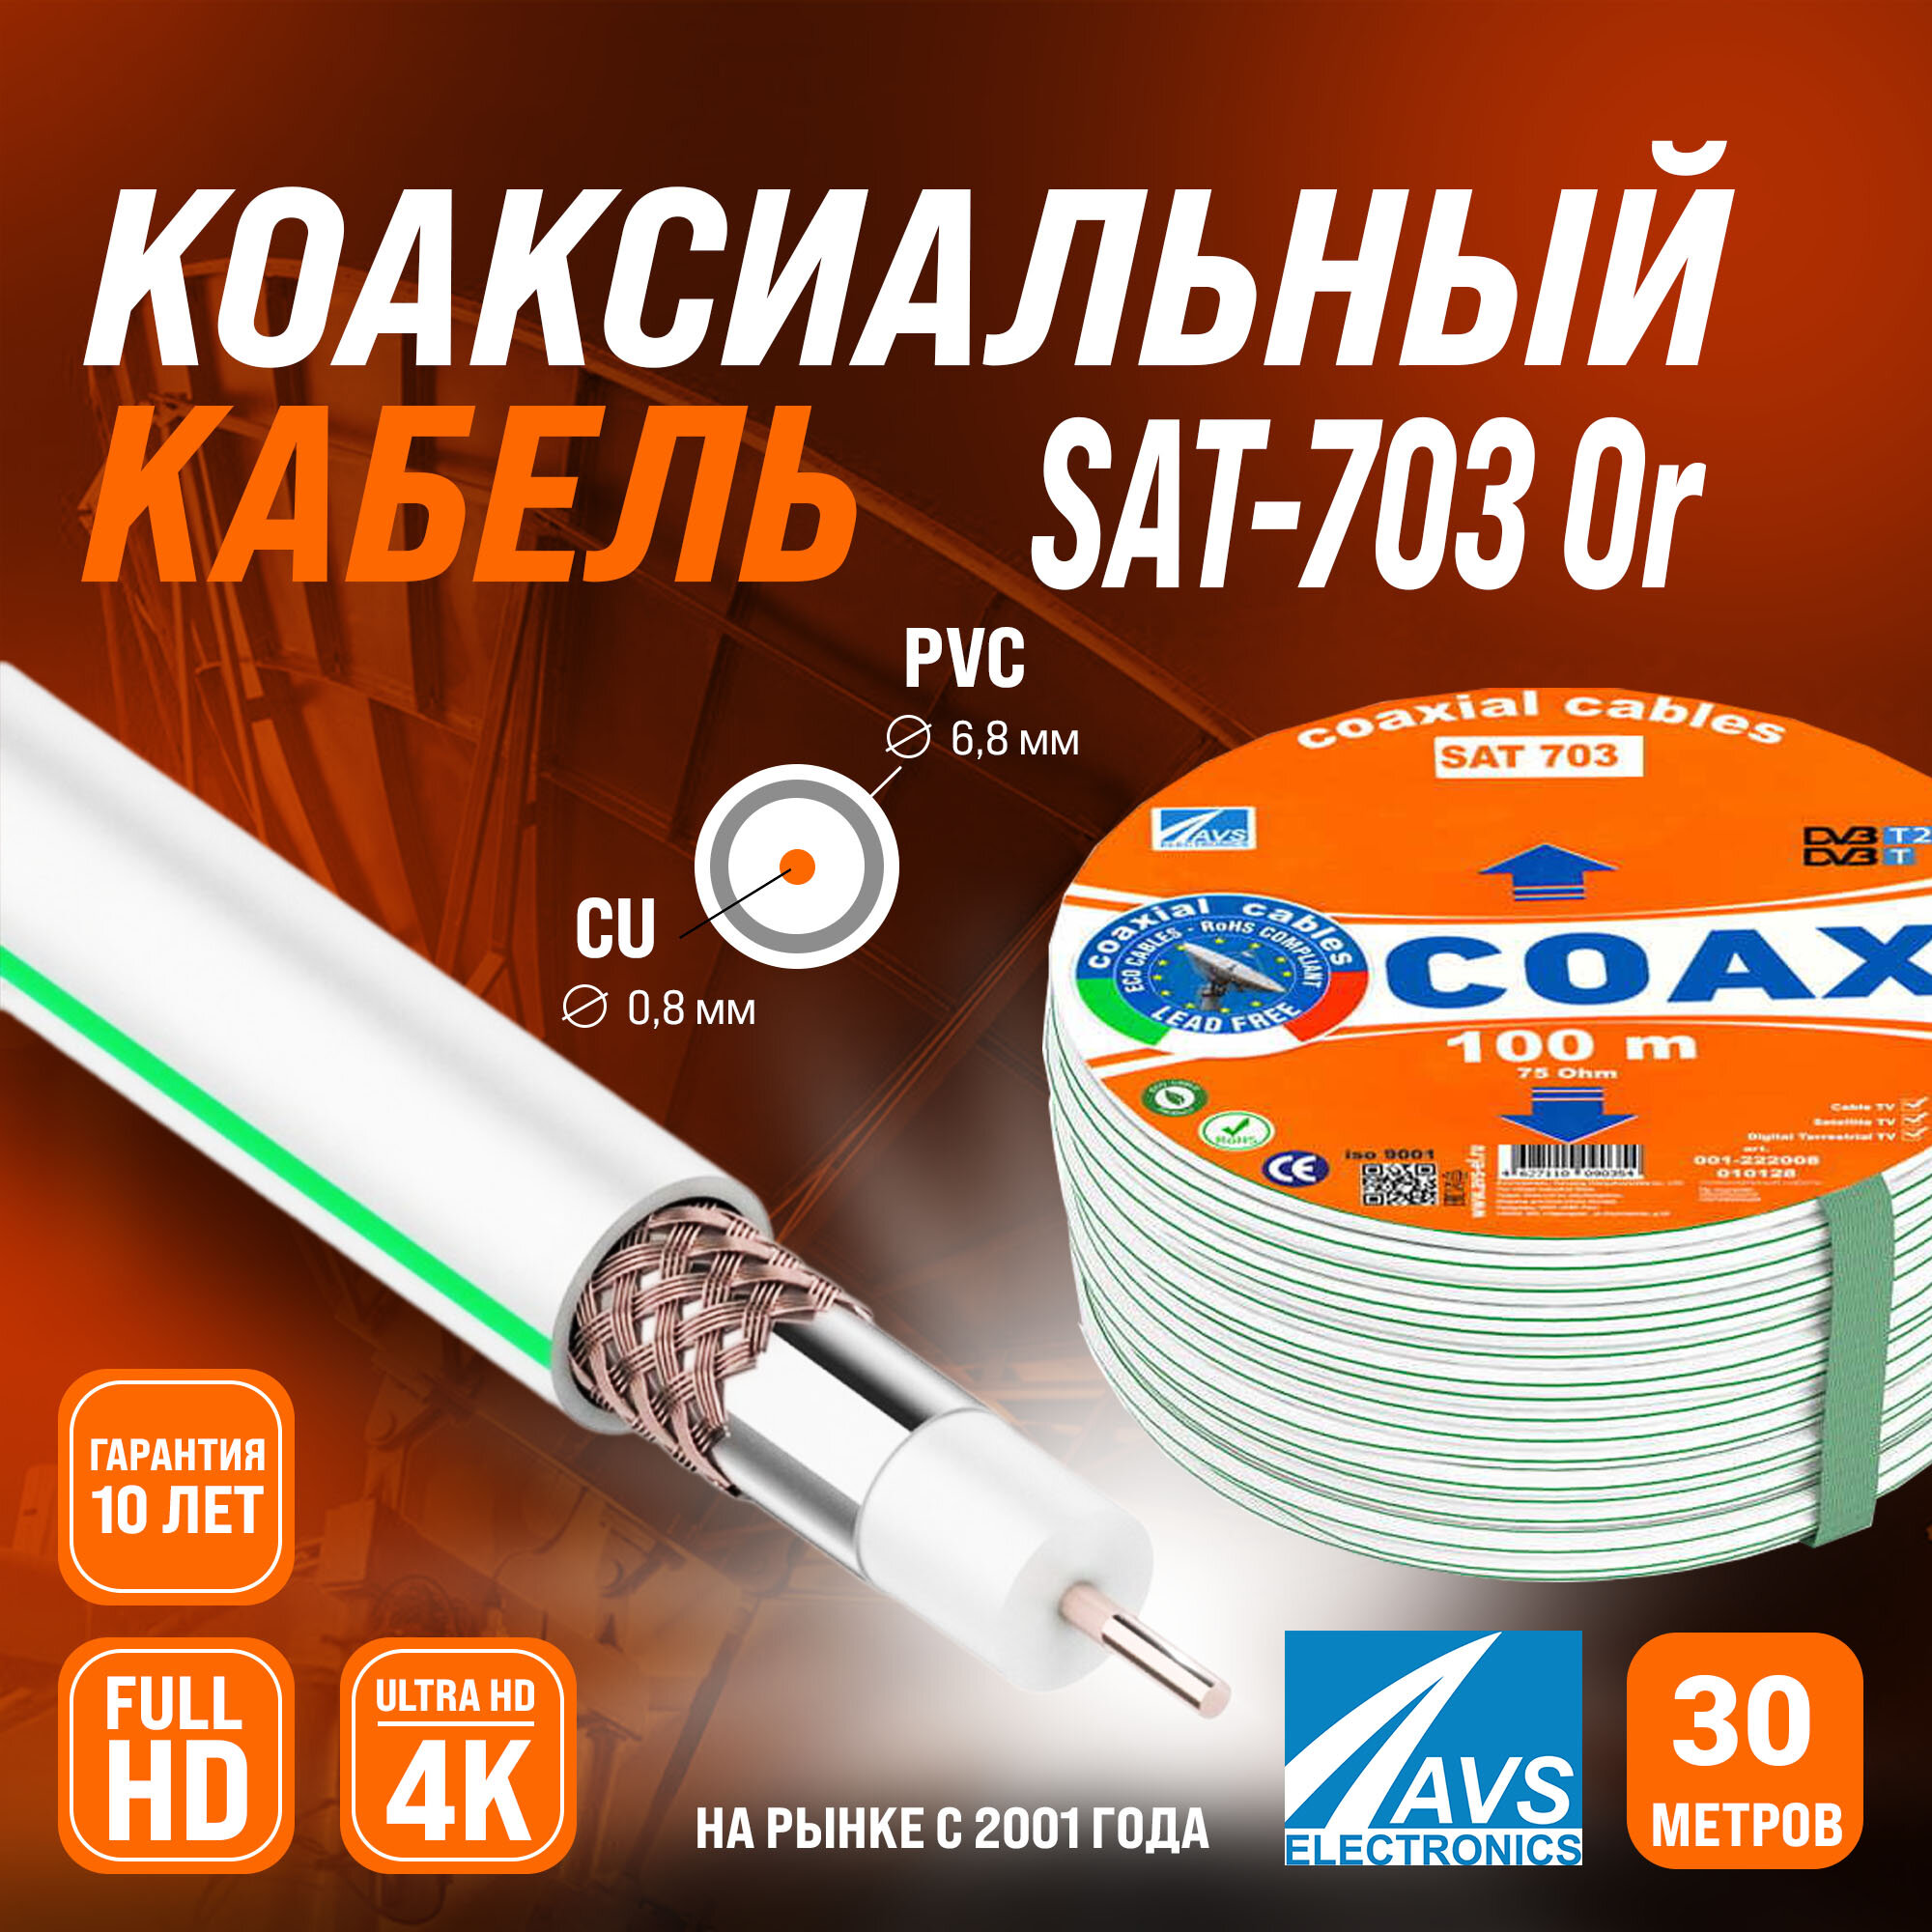 Медный телевизионный коаксиальный кабель 30 м SAT-703 Cu Or AVS Electronics антенный провод для спутниковой тарелки, цифрового, эфирного тв 30 метров 001-222008/30